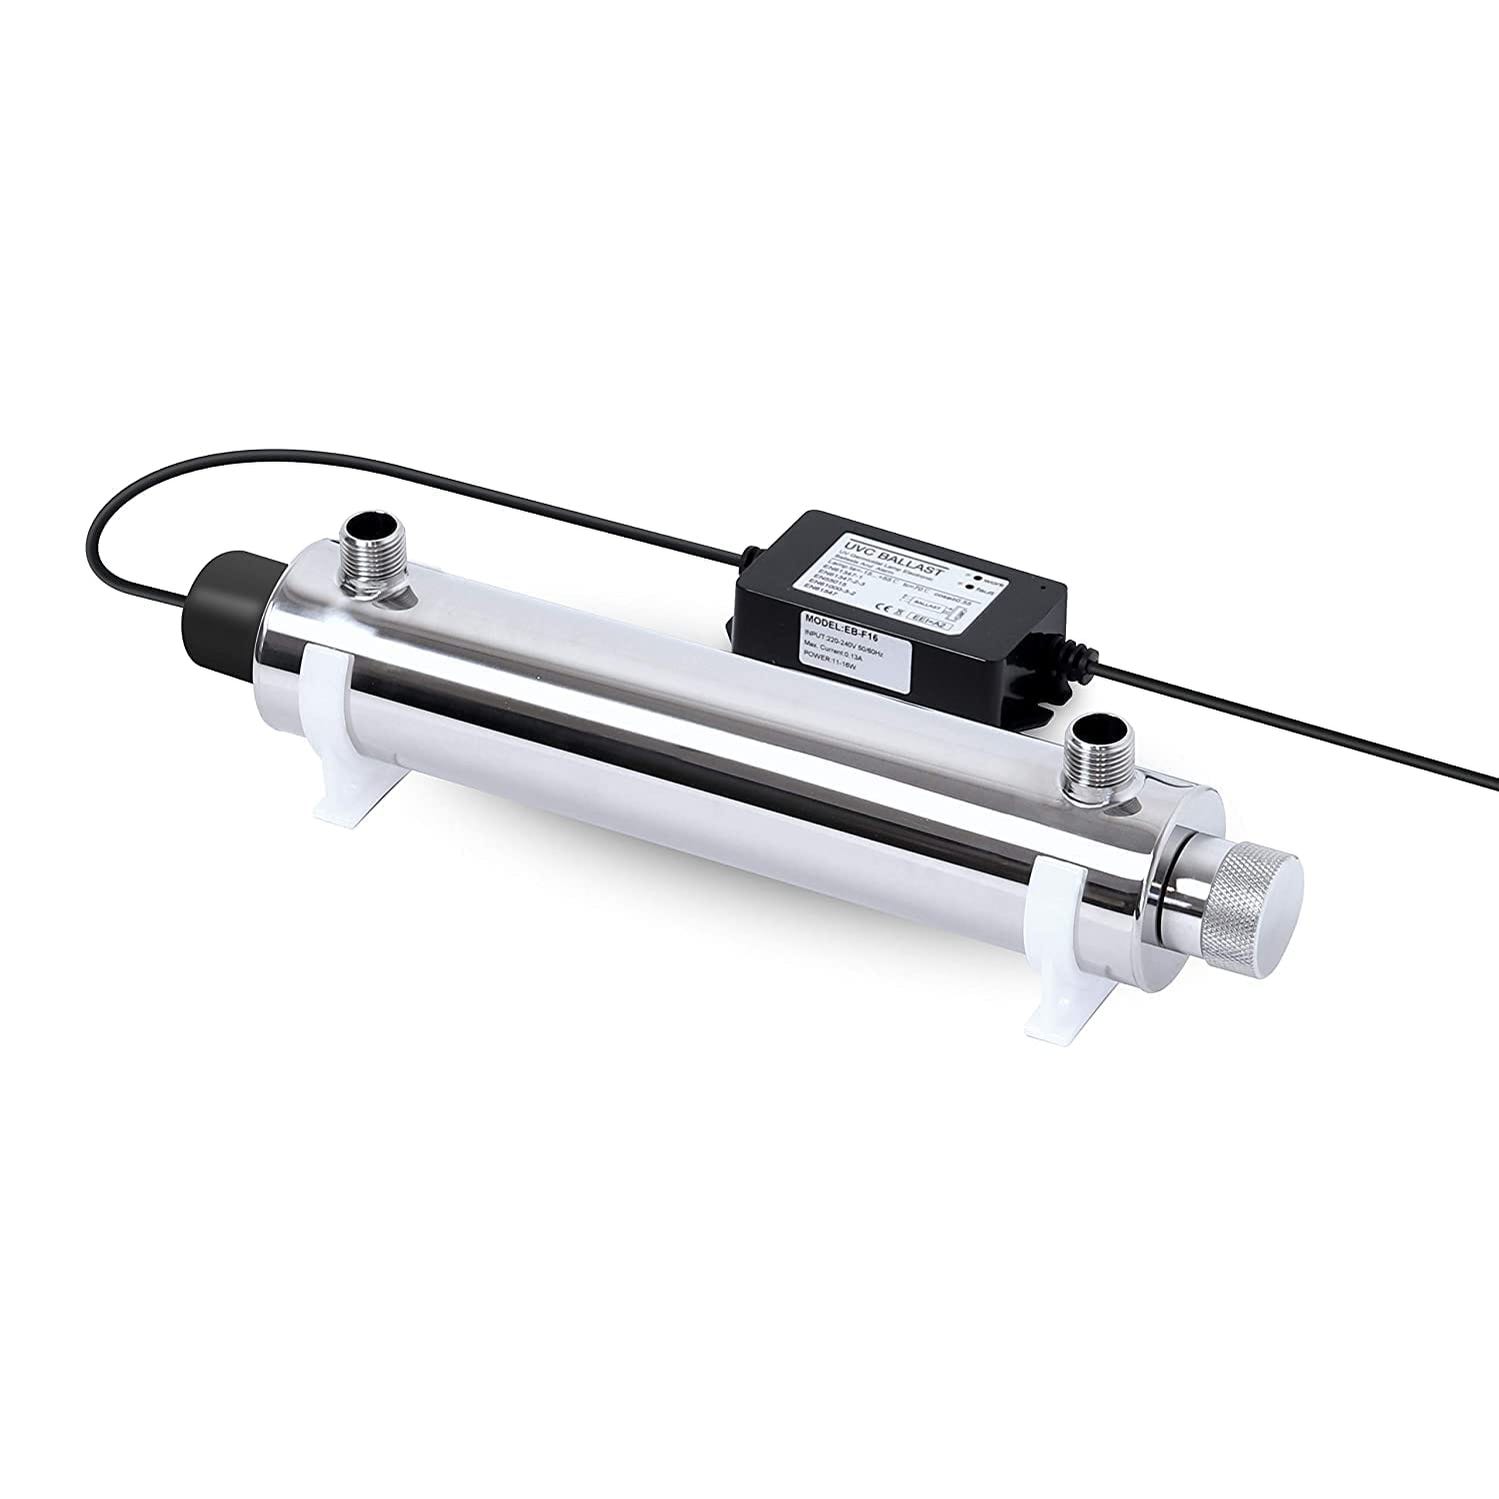 Sterilizzatore UV Acqua Completo Antibatterico con Lampada 11 watt 4  litri/minuto per Impianti di Filtrazione acqua domestica, Osmosi Inversa e  acquar